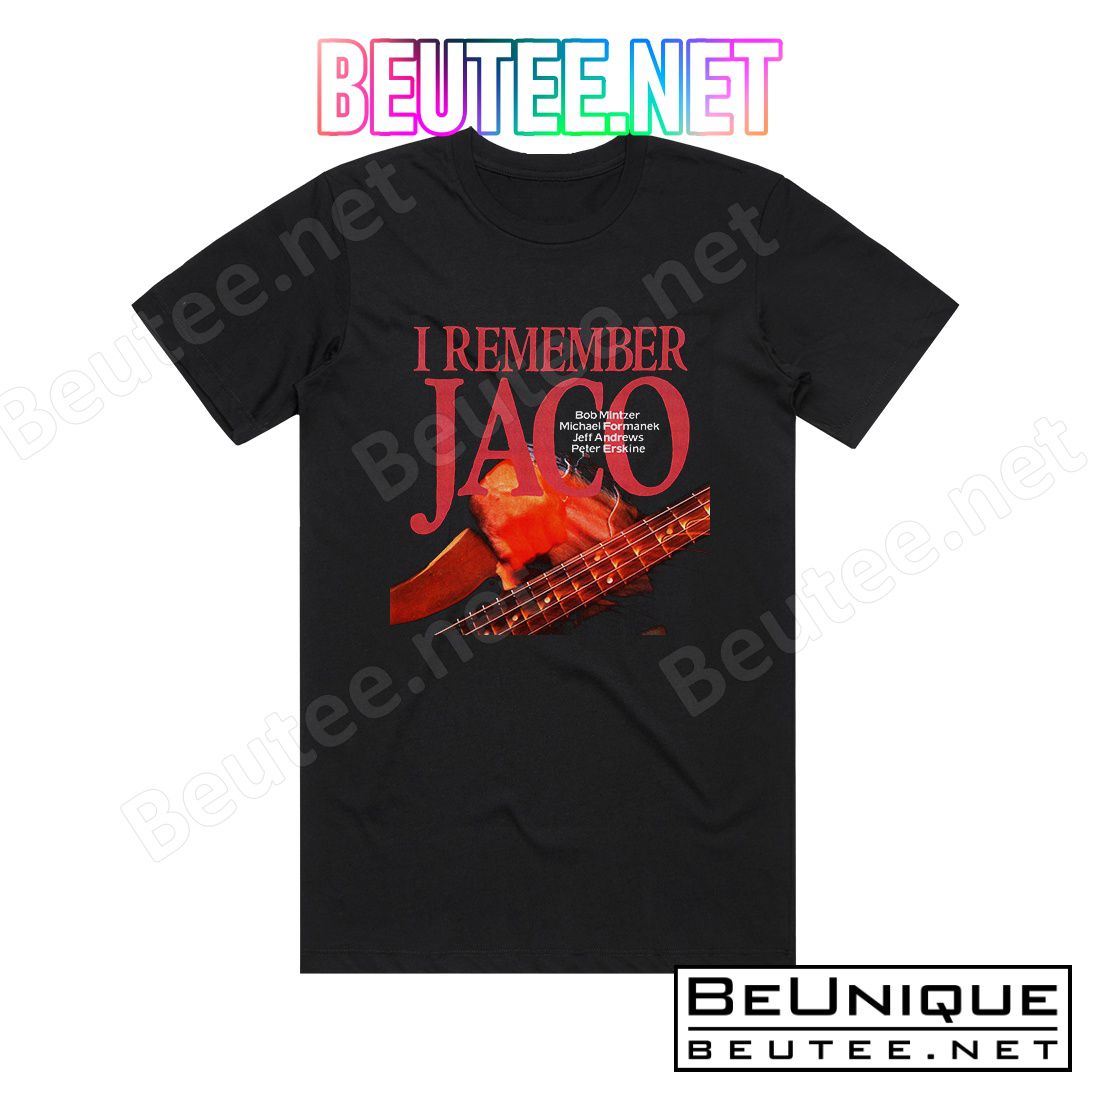 Bob Mintzer I Remember Jaco Album Cover T-Shirt